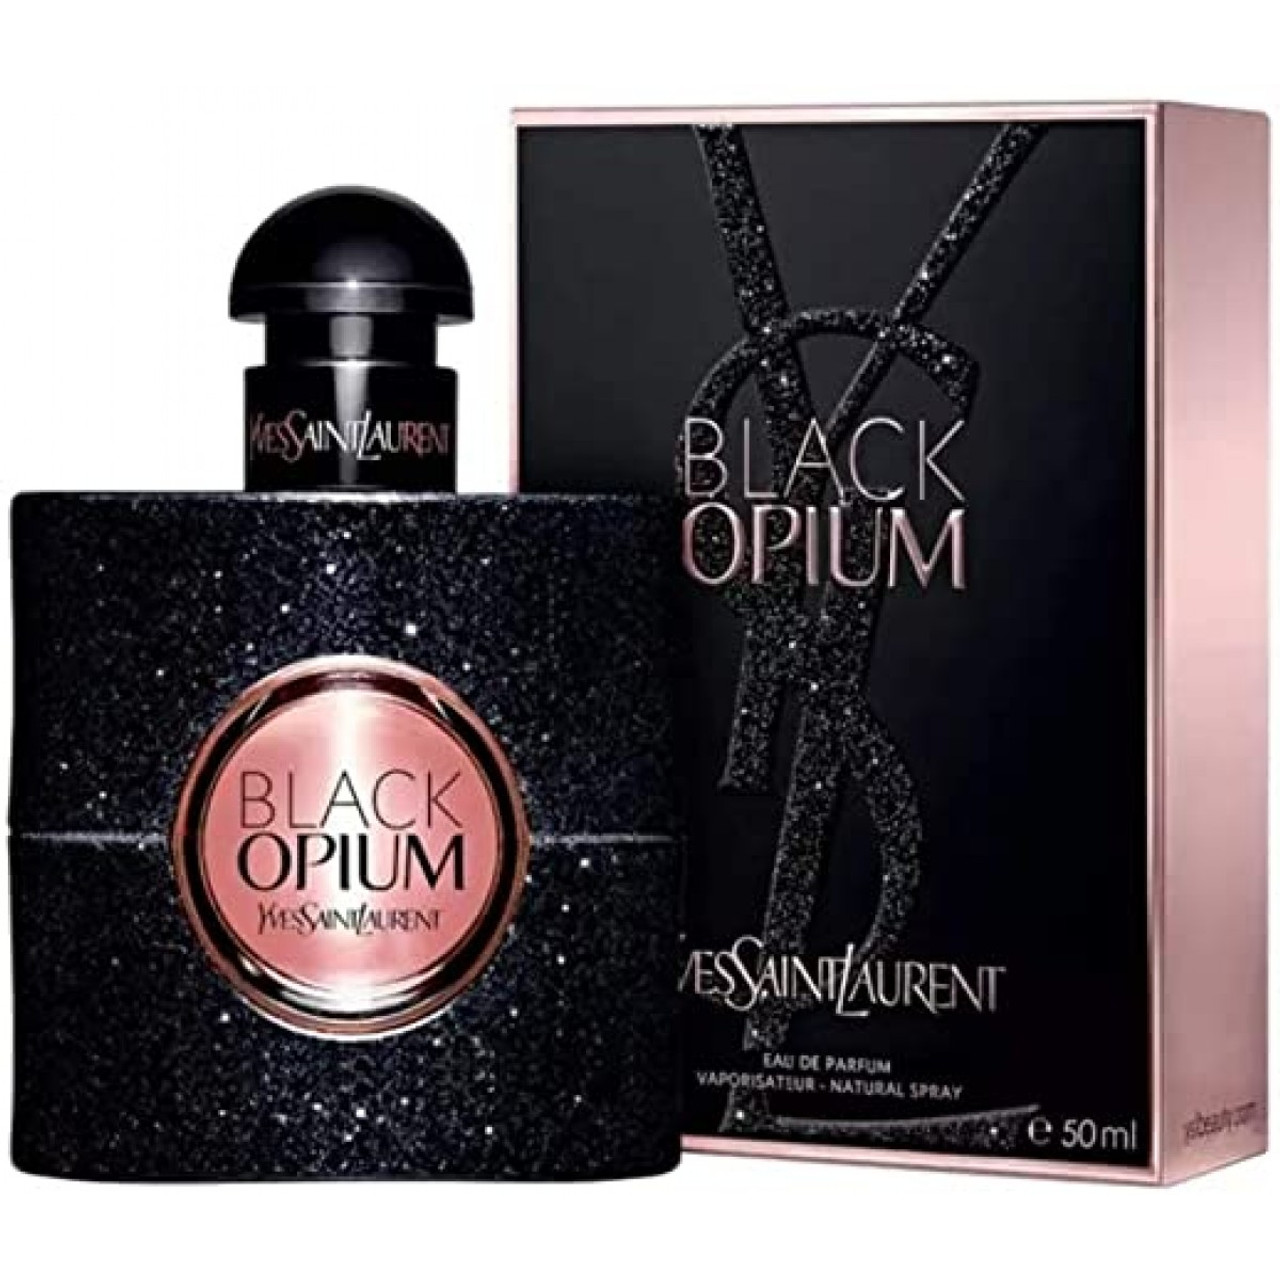 Black Opium YSL – Perfume Express